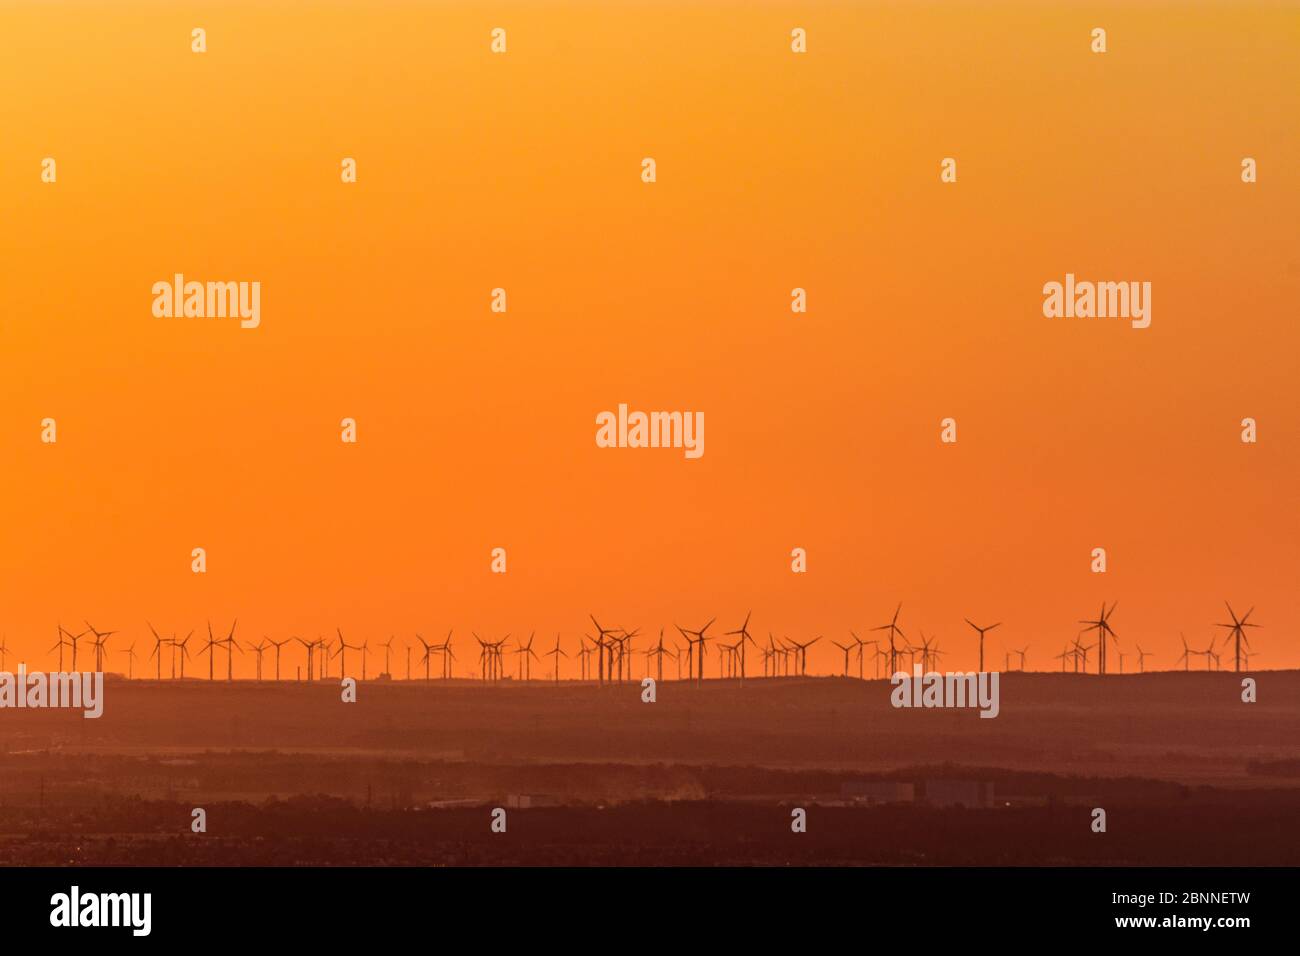 Vienne, éoliennes à Marchfeld au lever du soleil, vue d'ensemble, Autriche Banque D'Images